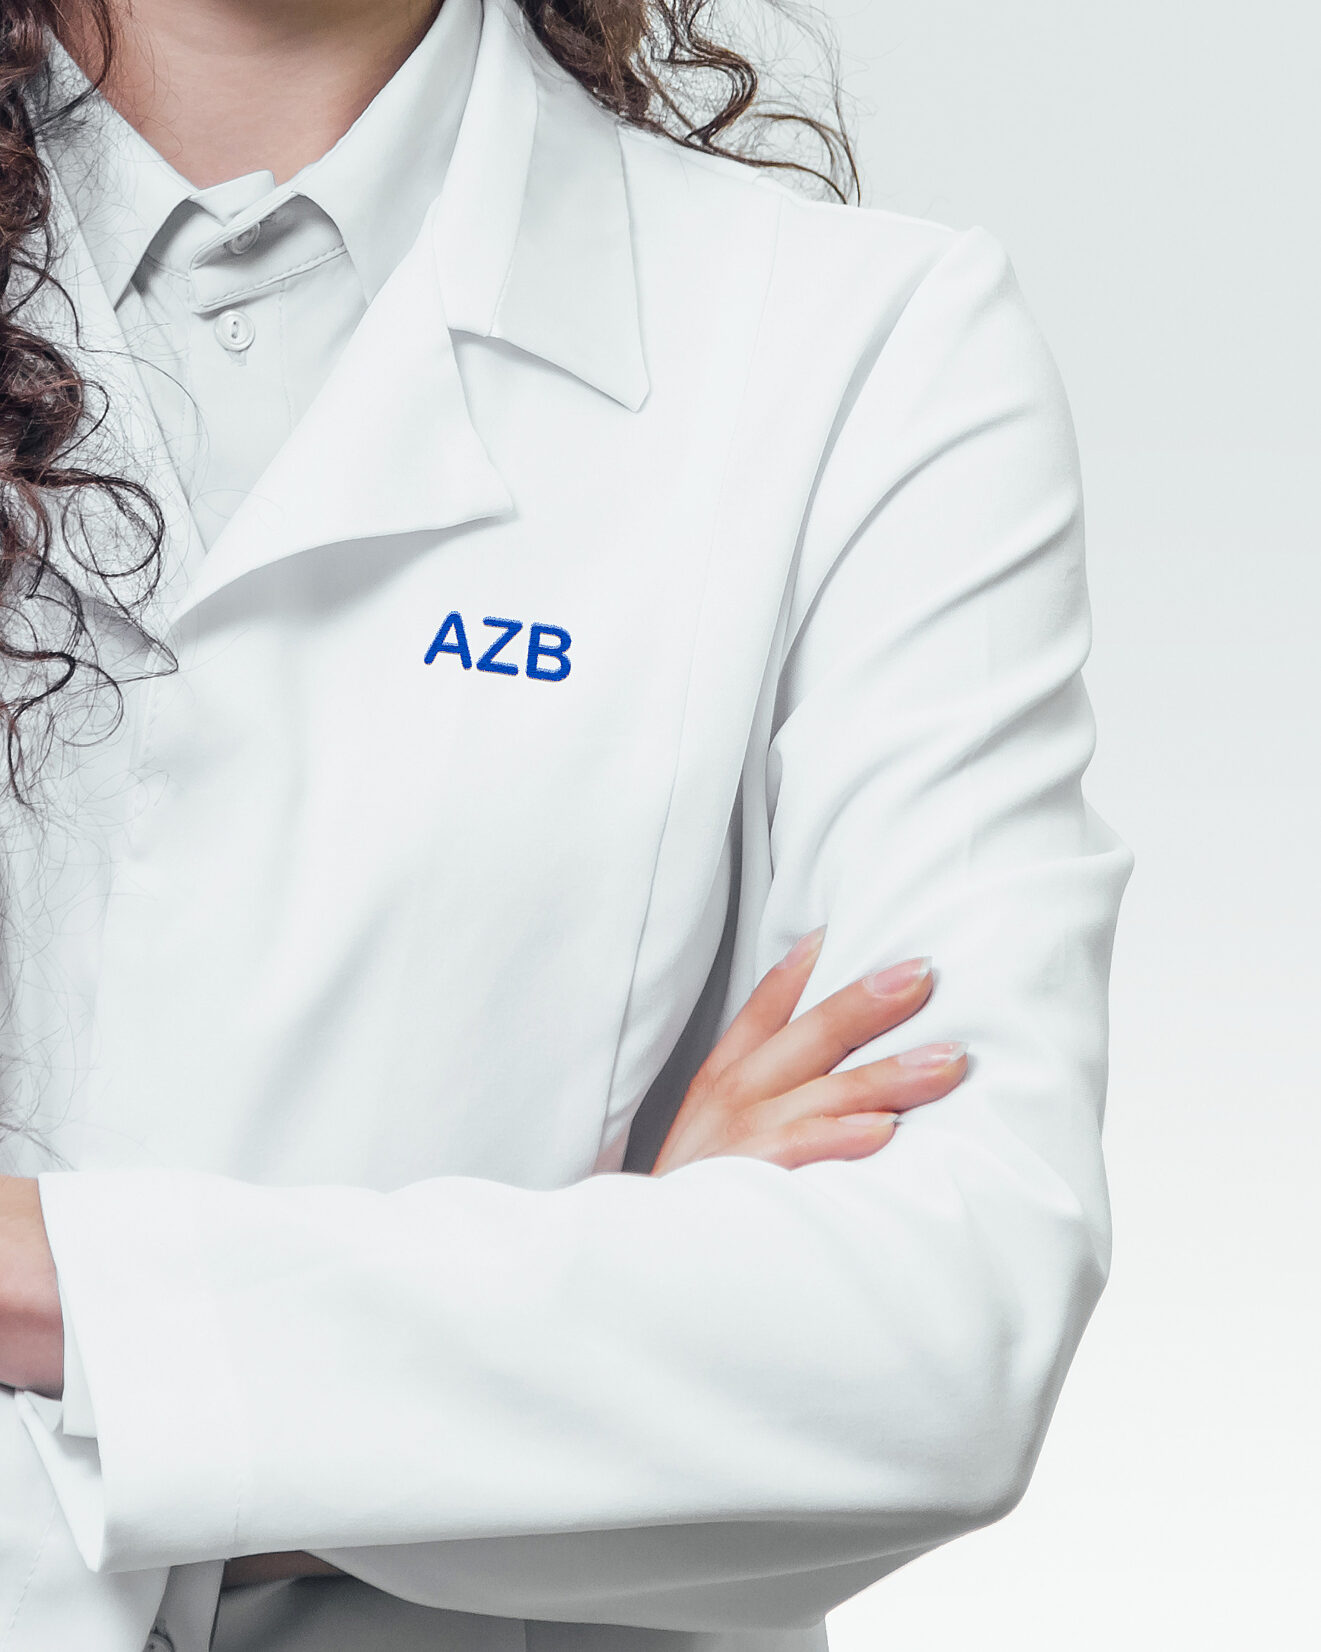 Firmen-Bekleidung mit dem Logo des AZB.